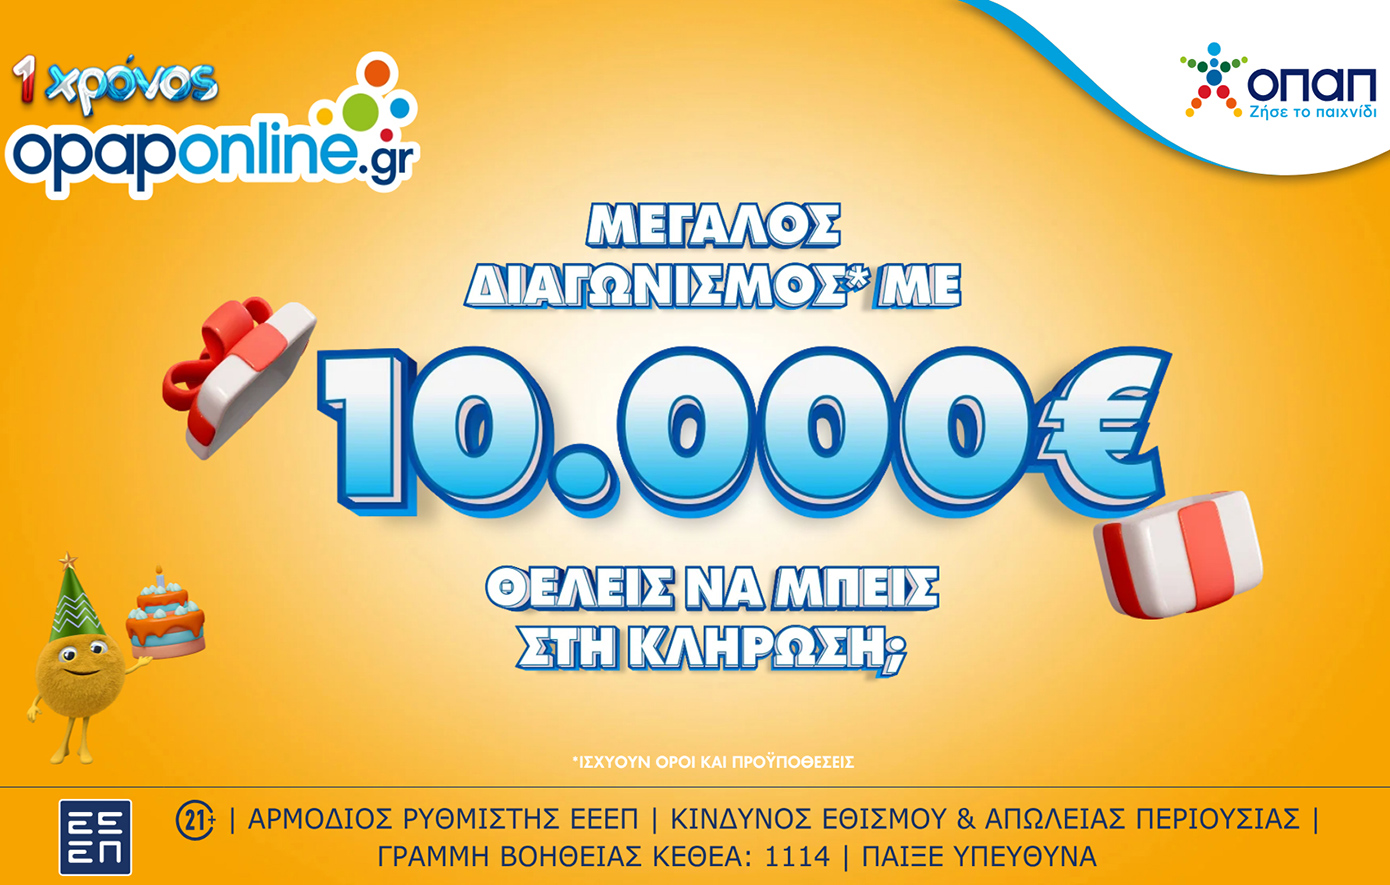 1 χρόνος opaponline.gr: Μεγάλος διαγωνισμός* για 10.000 ευρώ